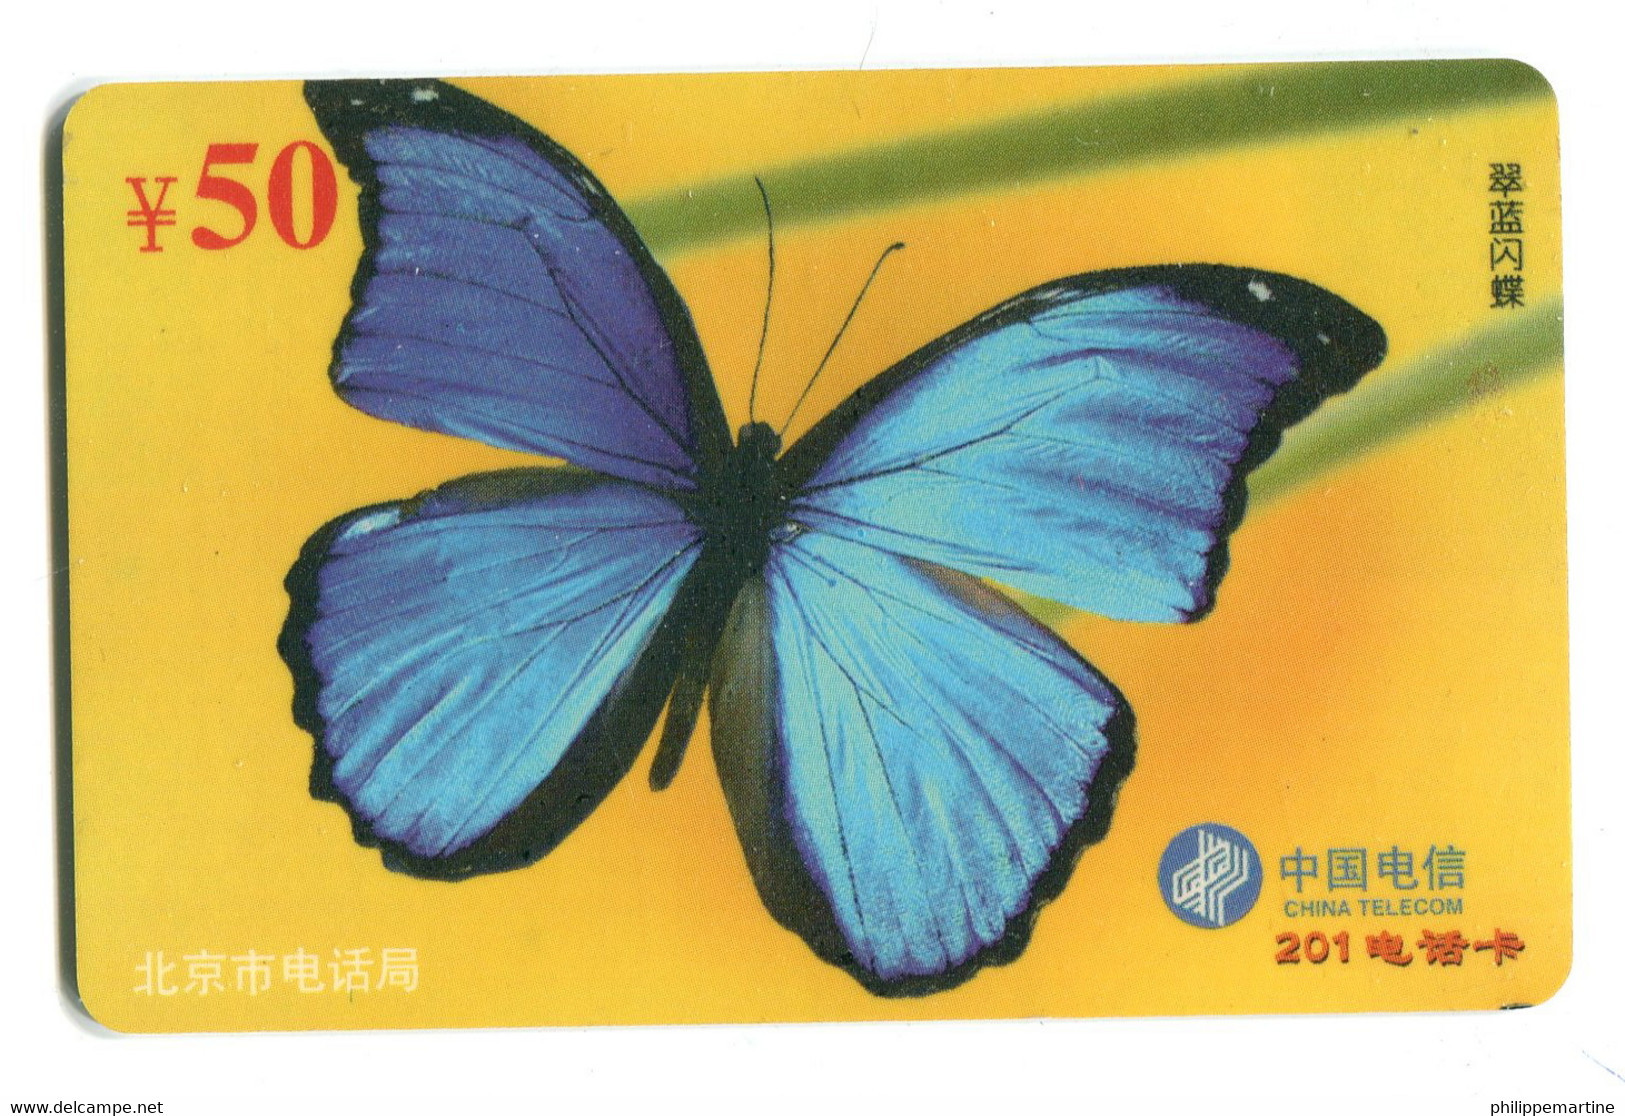 Télécarte China Télécom :  Papillon - Mariposas